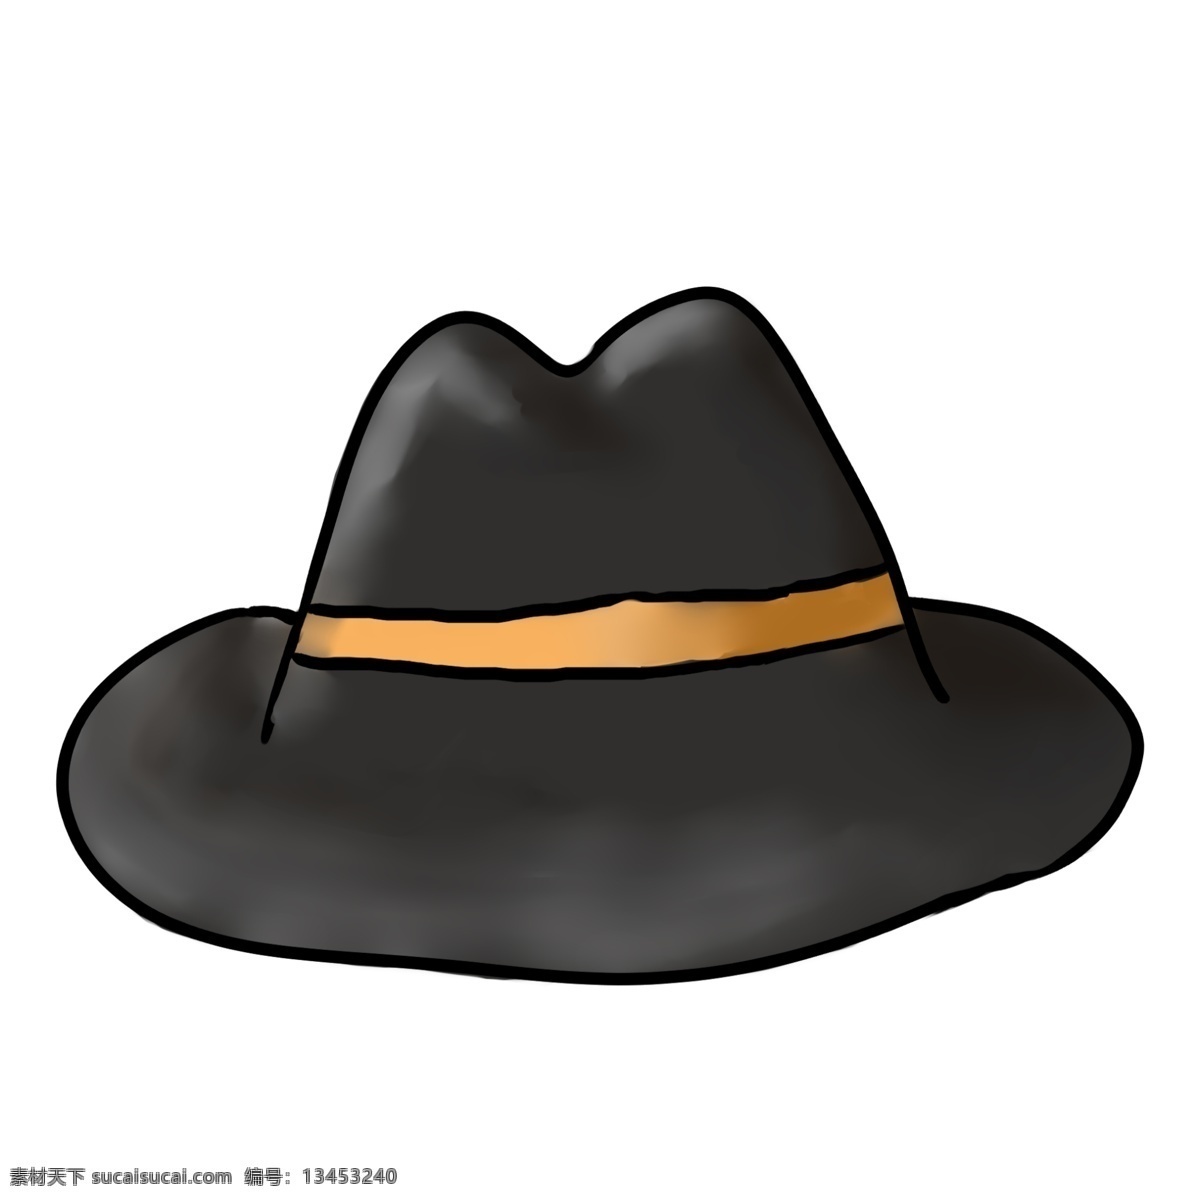 黑色 绅士 帽子 插画 黑色的帽子 卡通插画 帽子插画 装饰帽子 遮阳帽子 取暖帽子 绅士的帽子